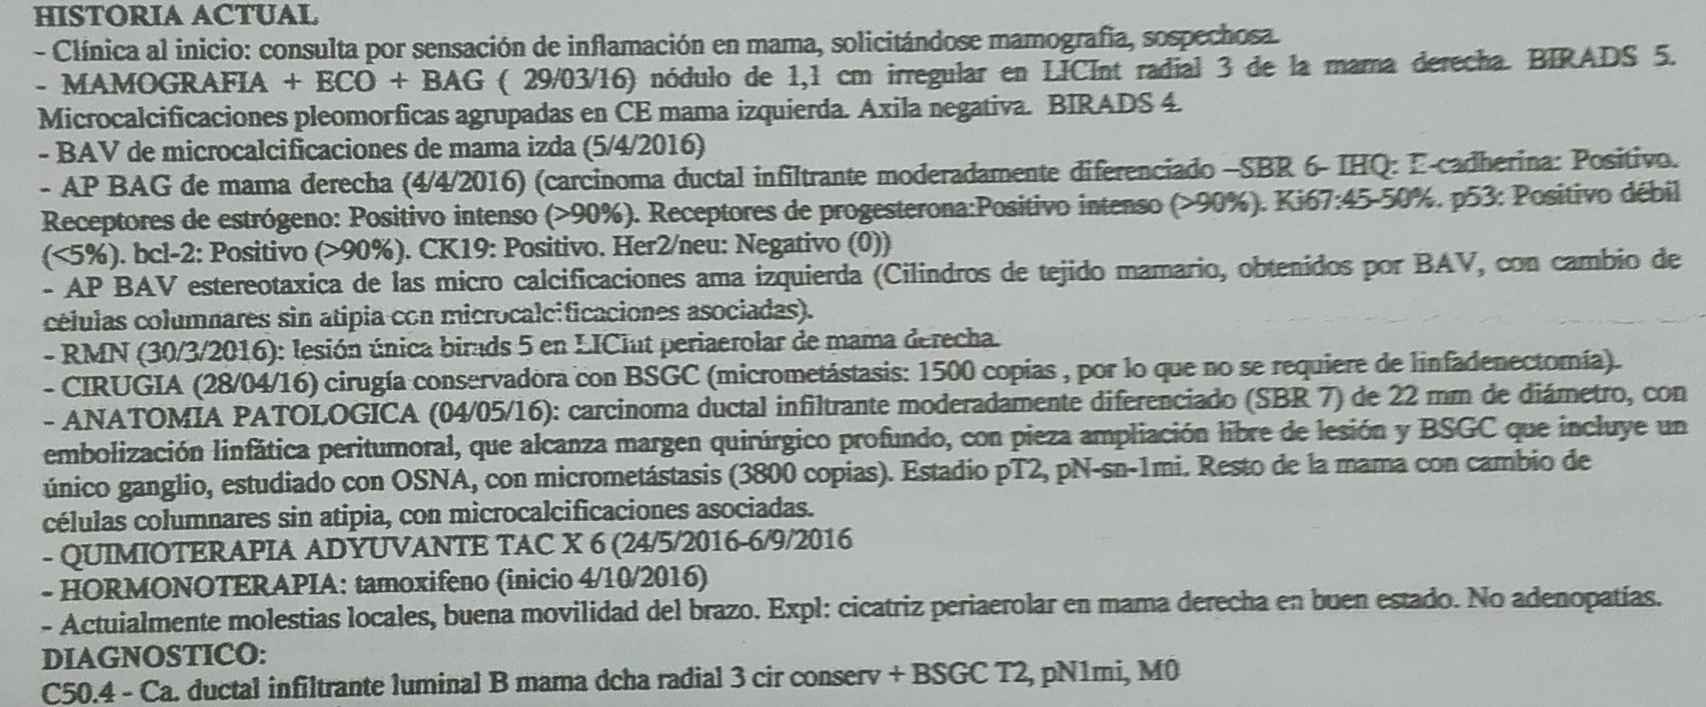 Informe médico de una paciente de La Aljorra con cáncer de mama.